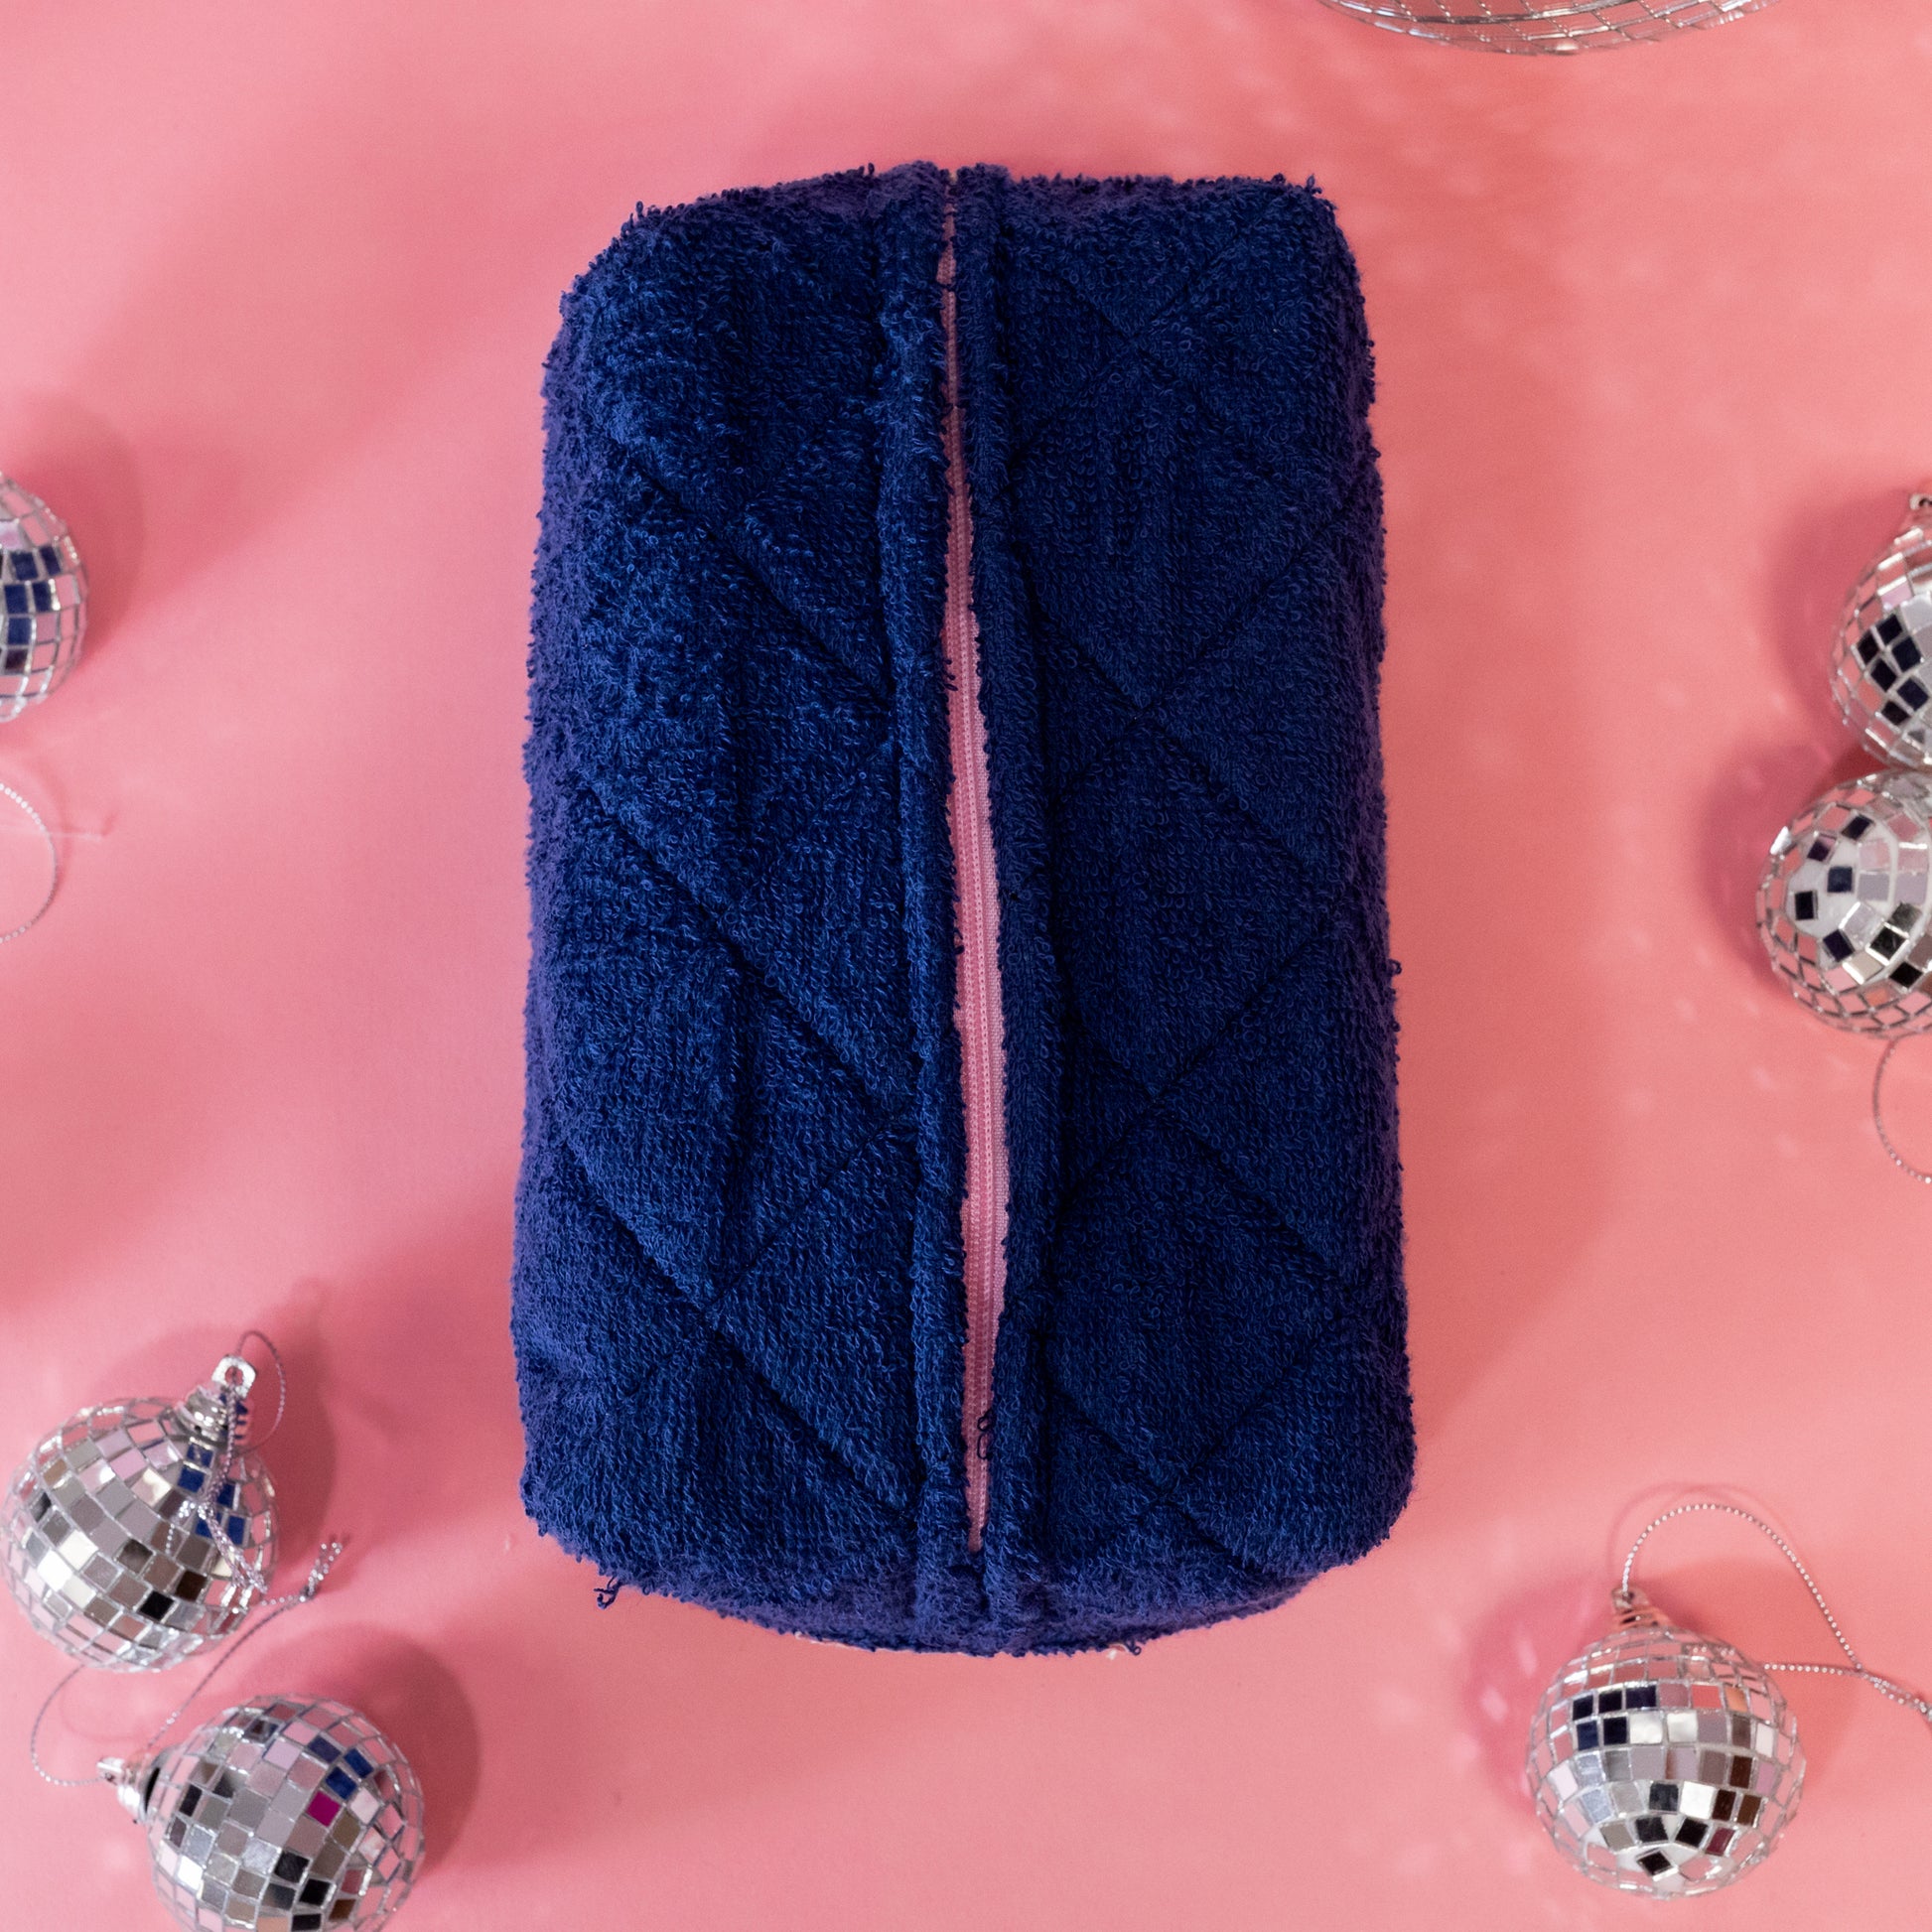 pink zipper on blue makeup bag